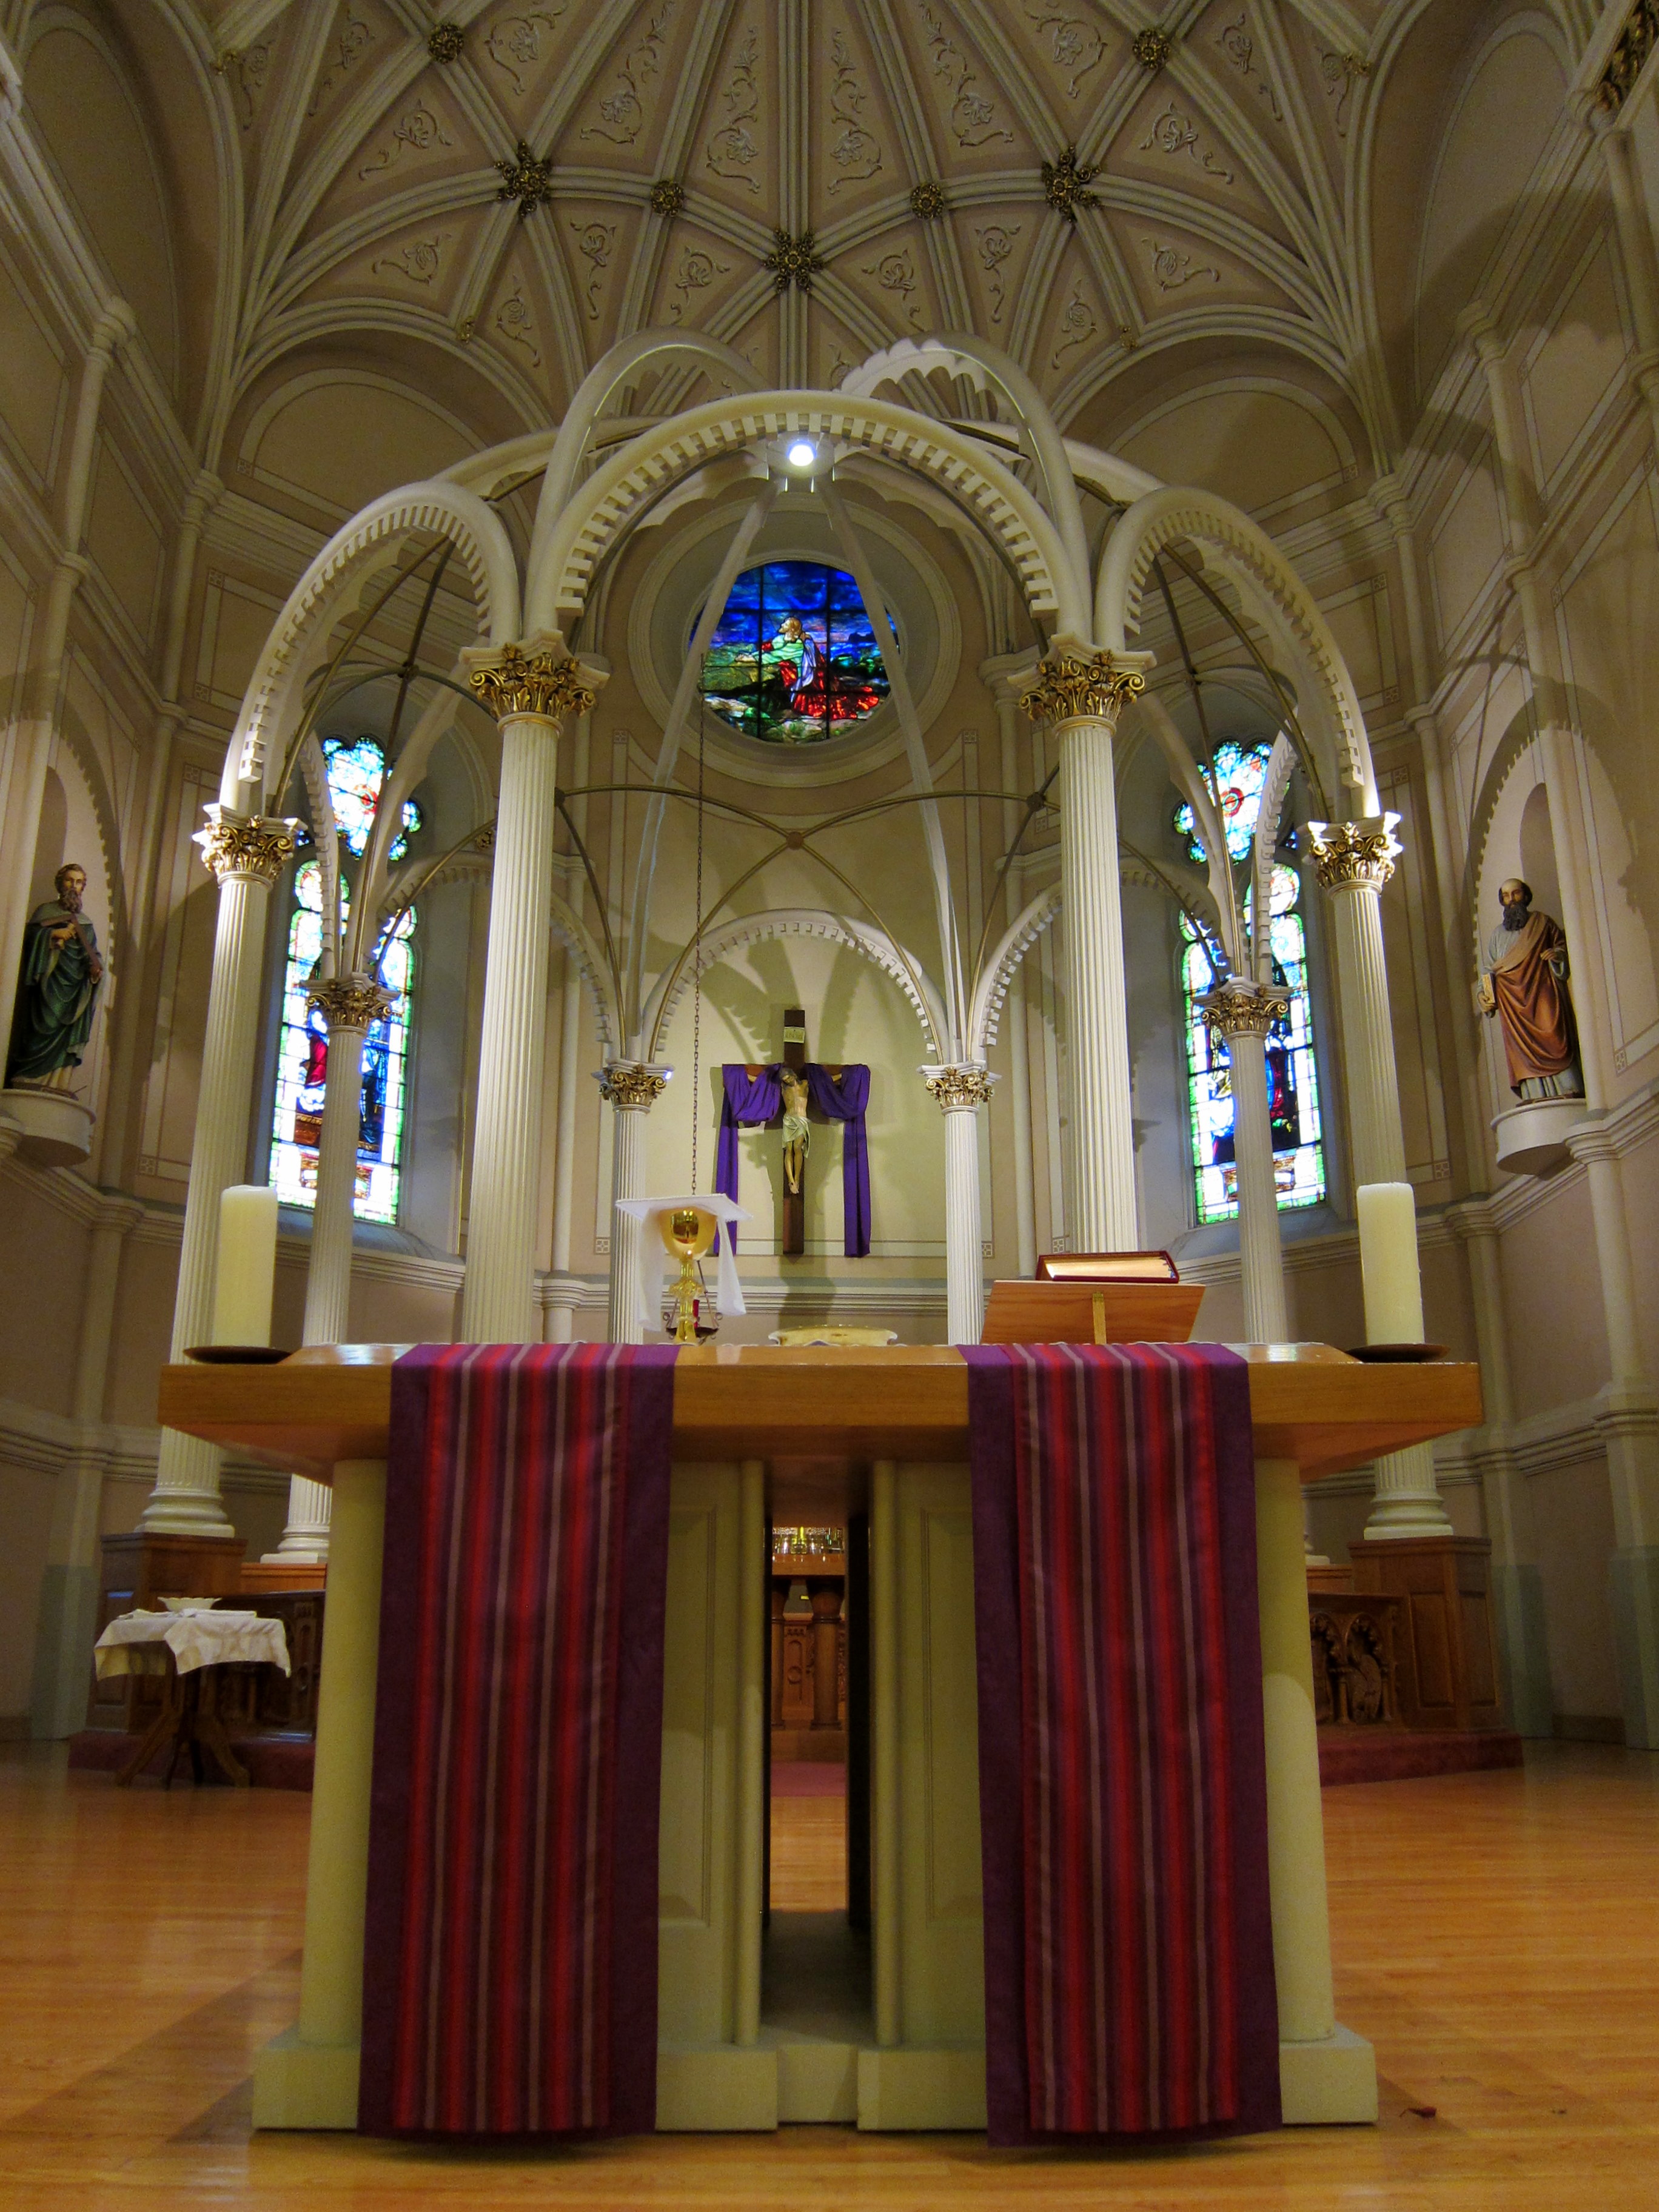 lent-decorations-for-church-sanctuary